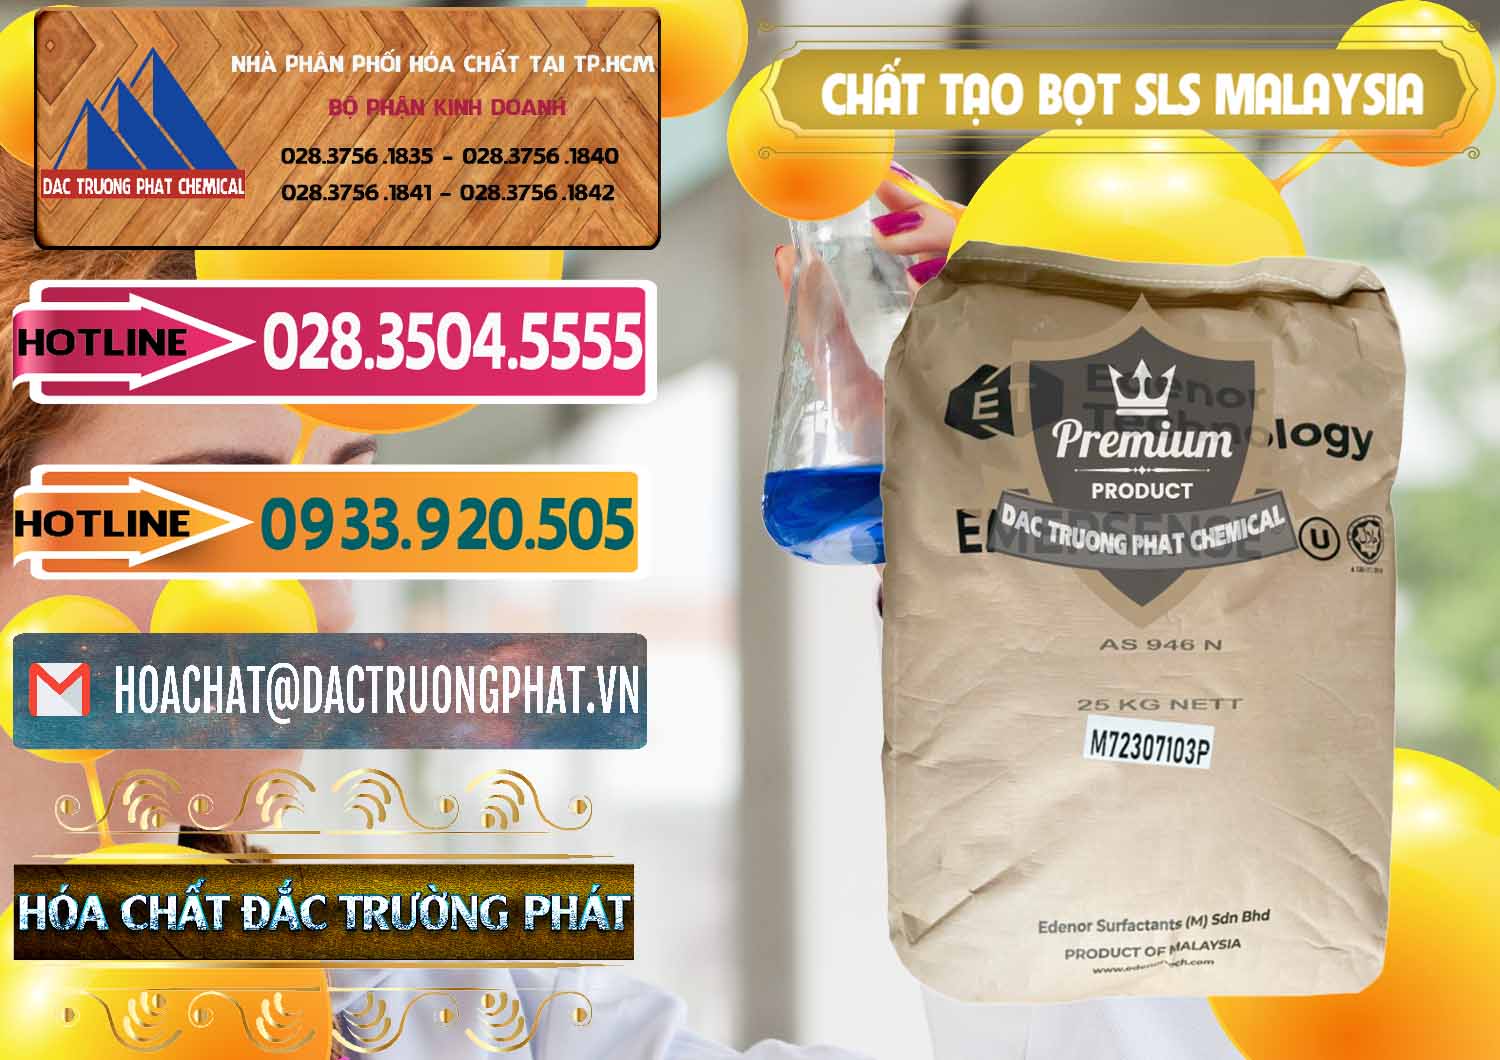 Công ty chuyên bán ( cung ứng ) Chất Tạo Bọt SLS Emersense Mã Lai Malaysia - 0381 - Nơi cung cấp - phân phối hóa chất tại TP.HCM - dactruongphat.vn